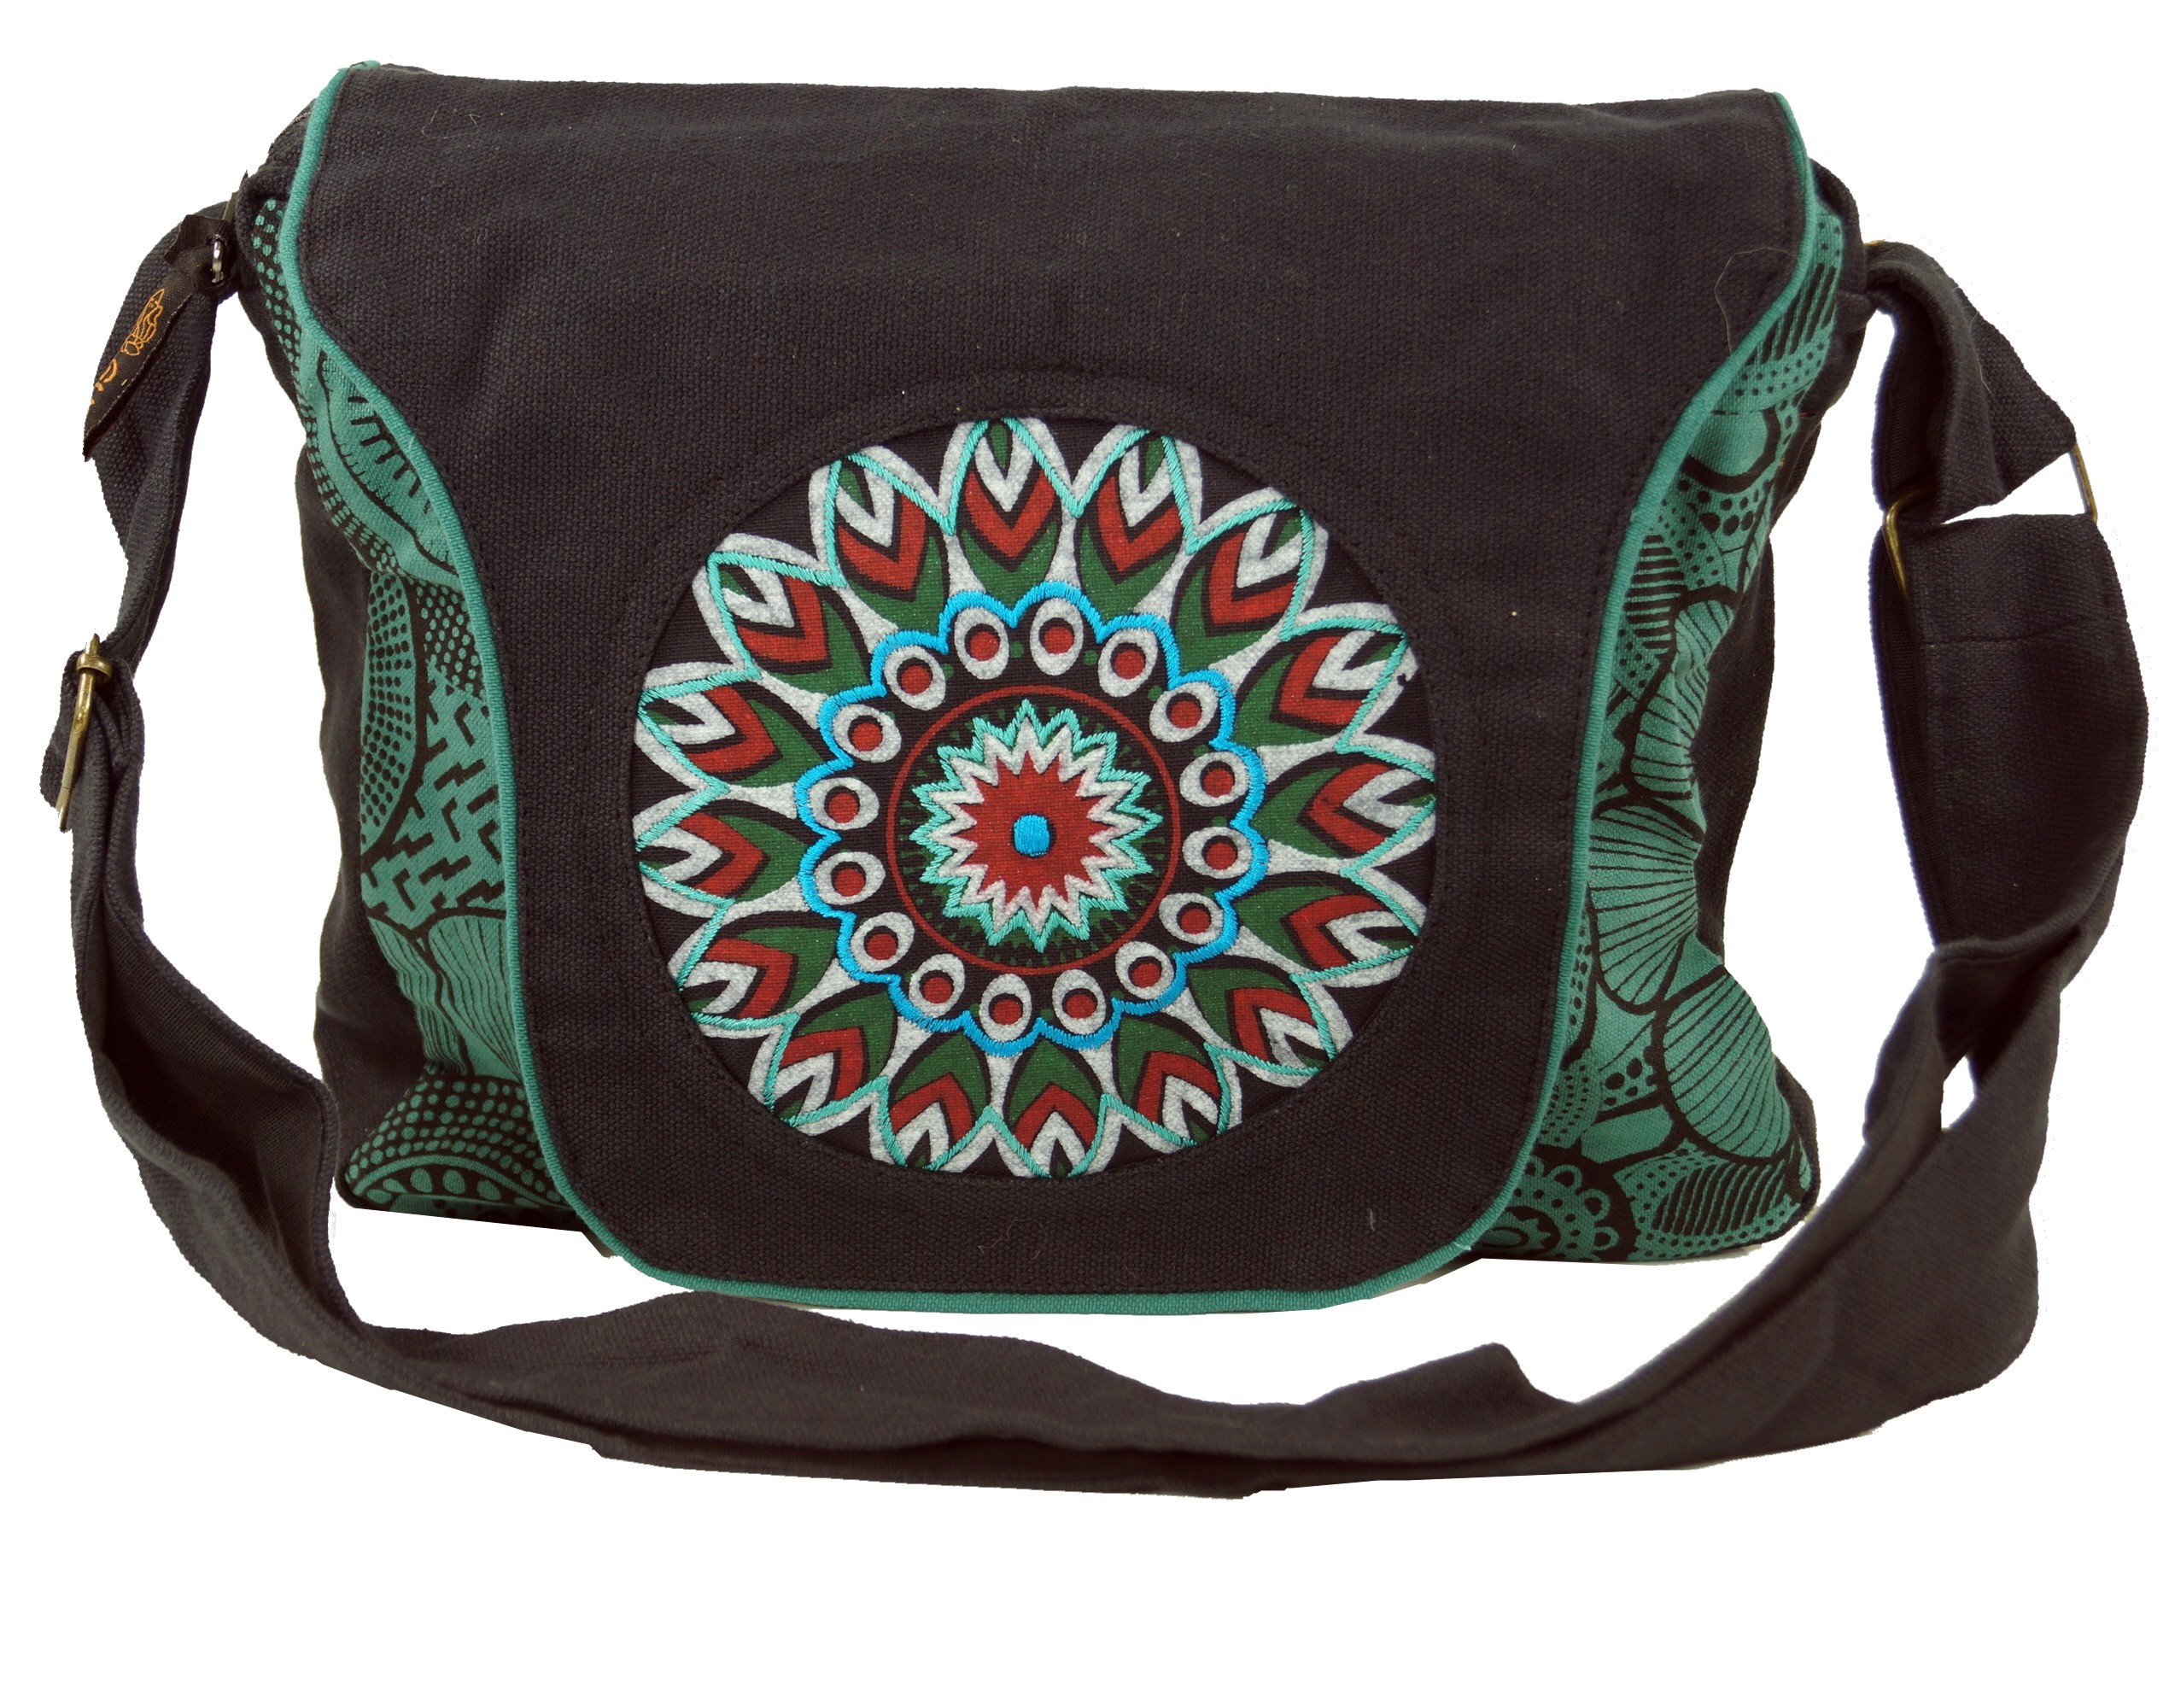 25x25x7 cm GURU SHOP Schultertasche Handtasche aus Stoff Baumwolle Hippie Tasche Goa Tasche Alternative Umhängetasche Herren/Damen Braun 